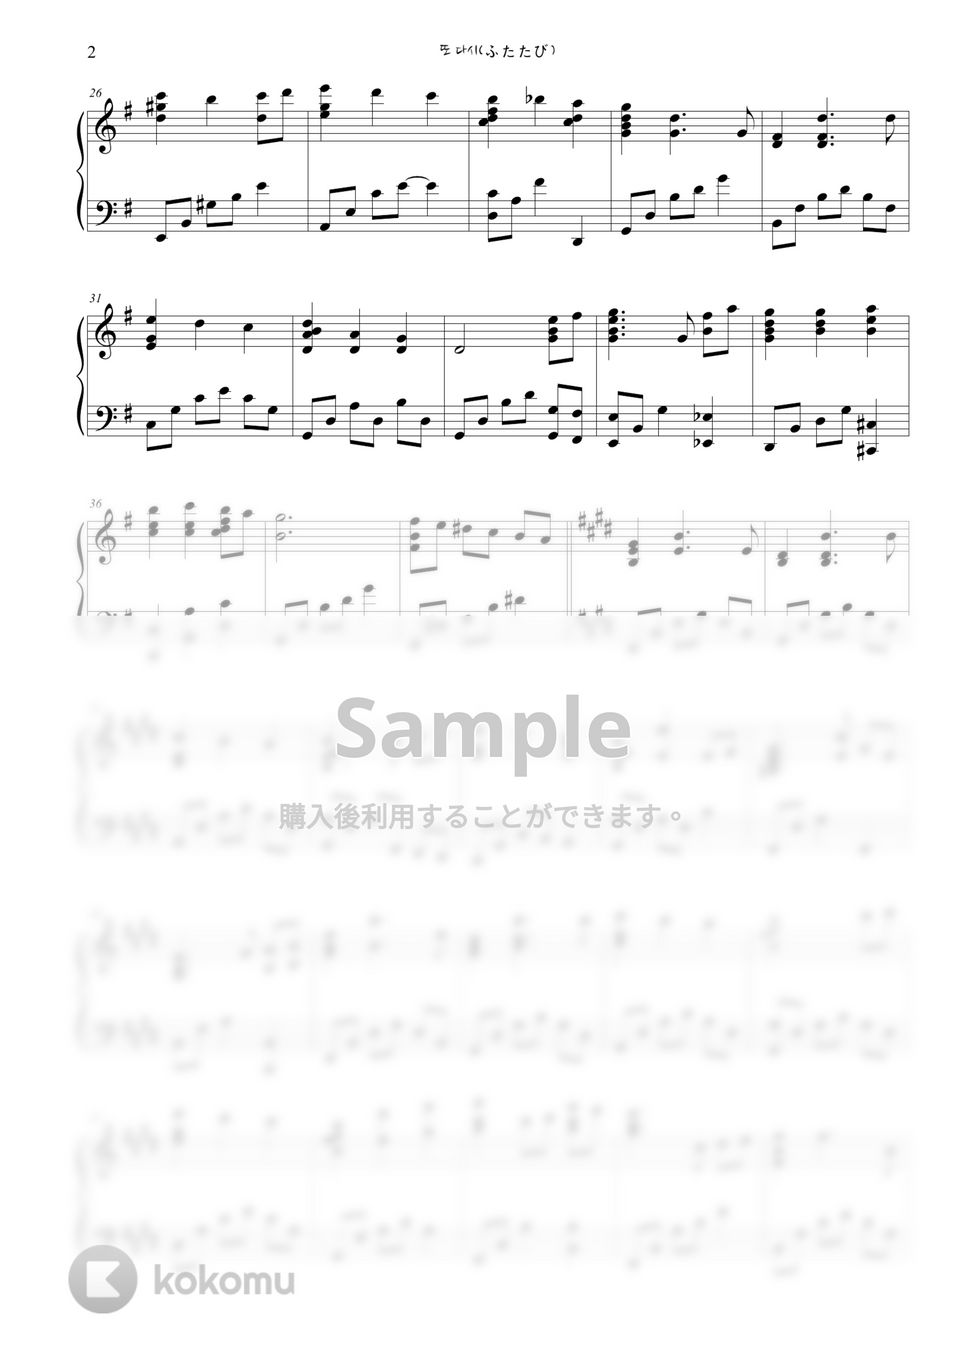 Hisaishi Joe - ふたたび(Reprise) (Spirited Away OST) by sora Hong